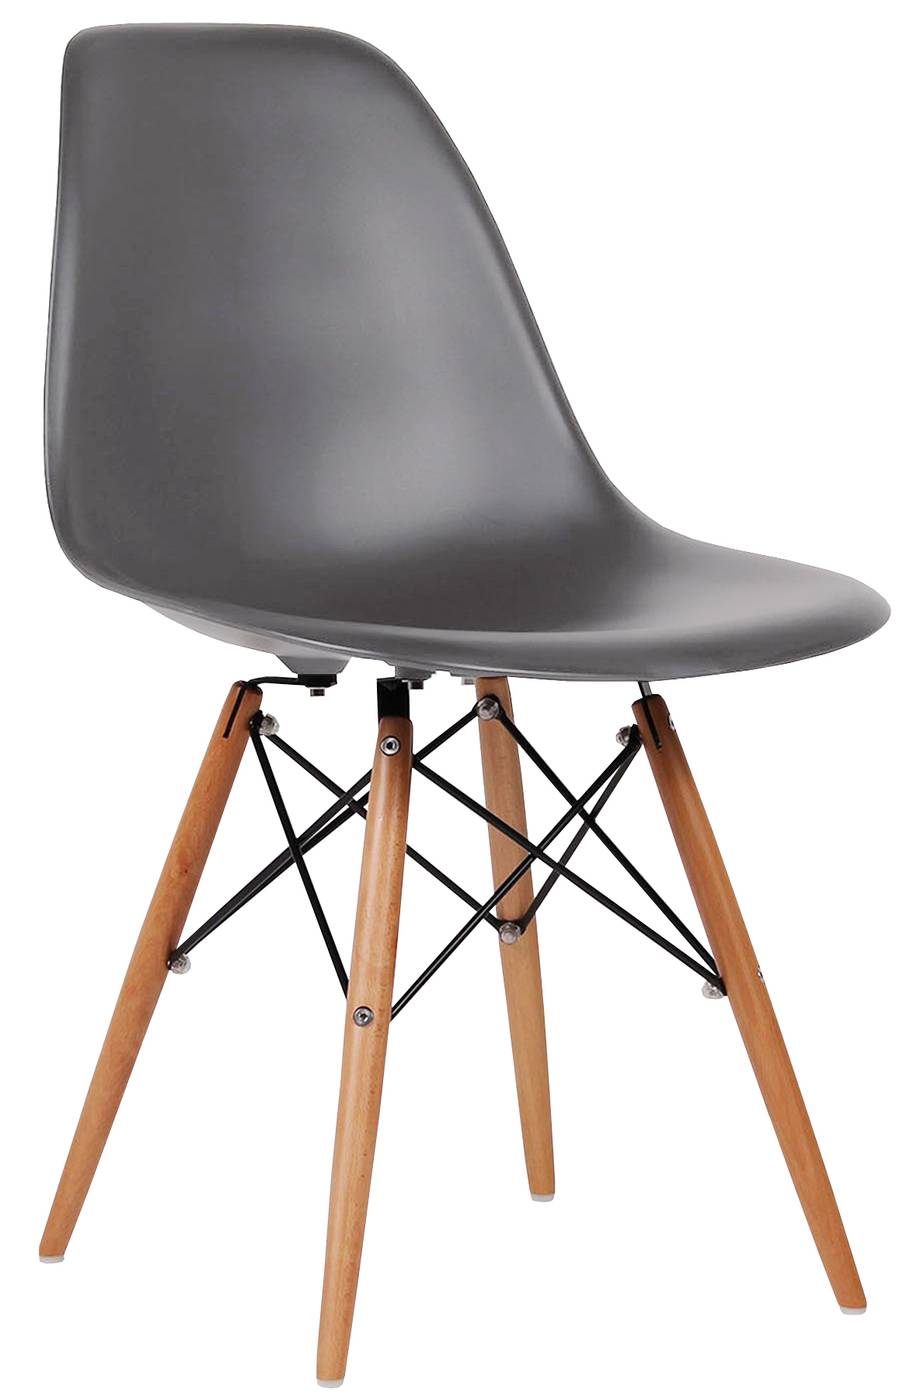 Silla de comedor. Patas de madera, con respaldo y asiento de polipropileno color gris.